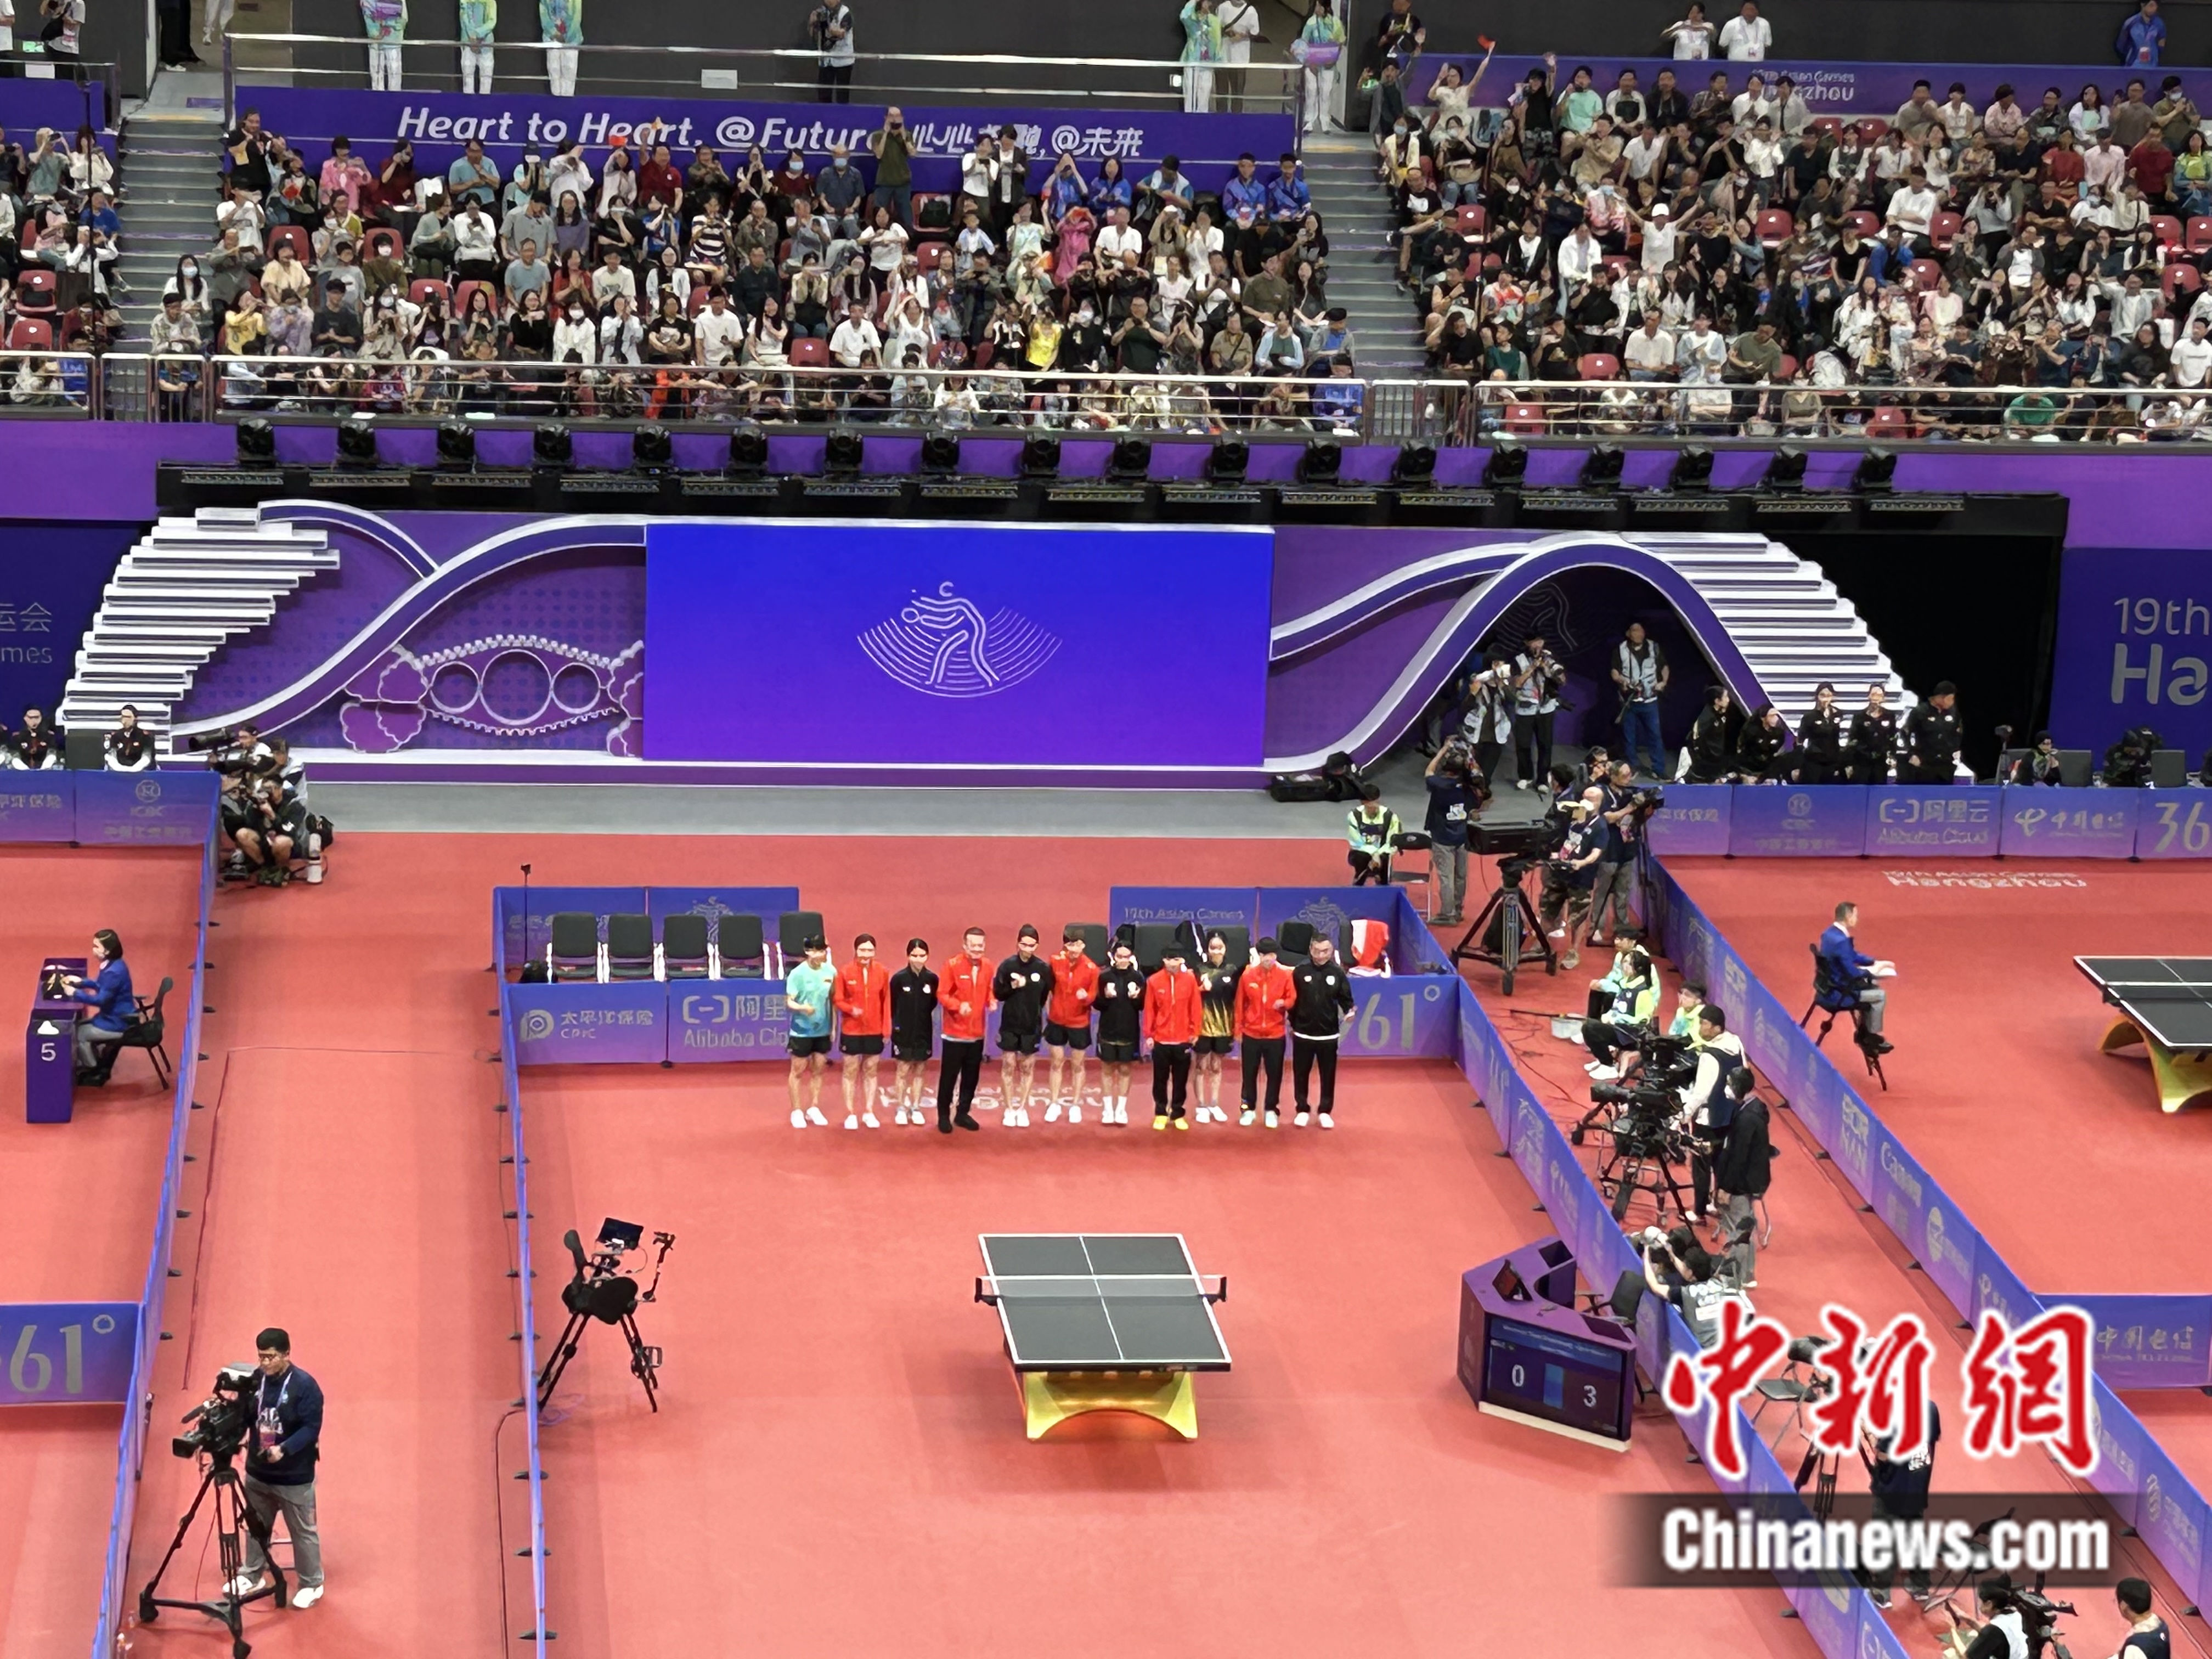 杭州亚运会乒乓球女团 中国队3:0战胜中国澳门队取得开门红